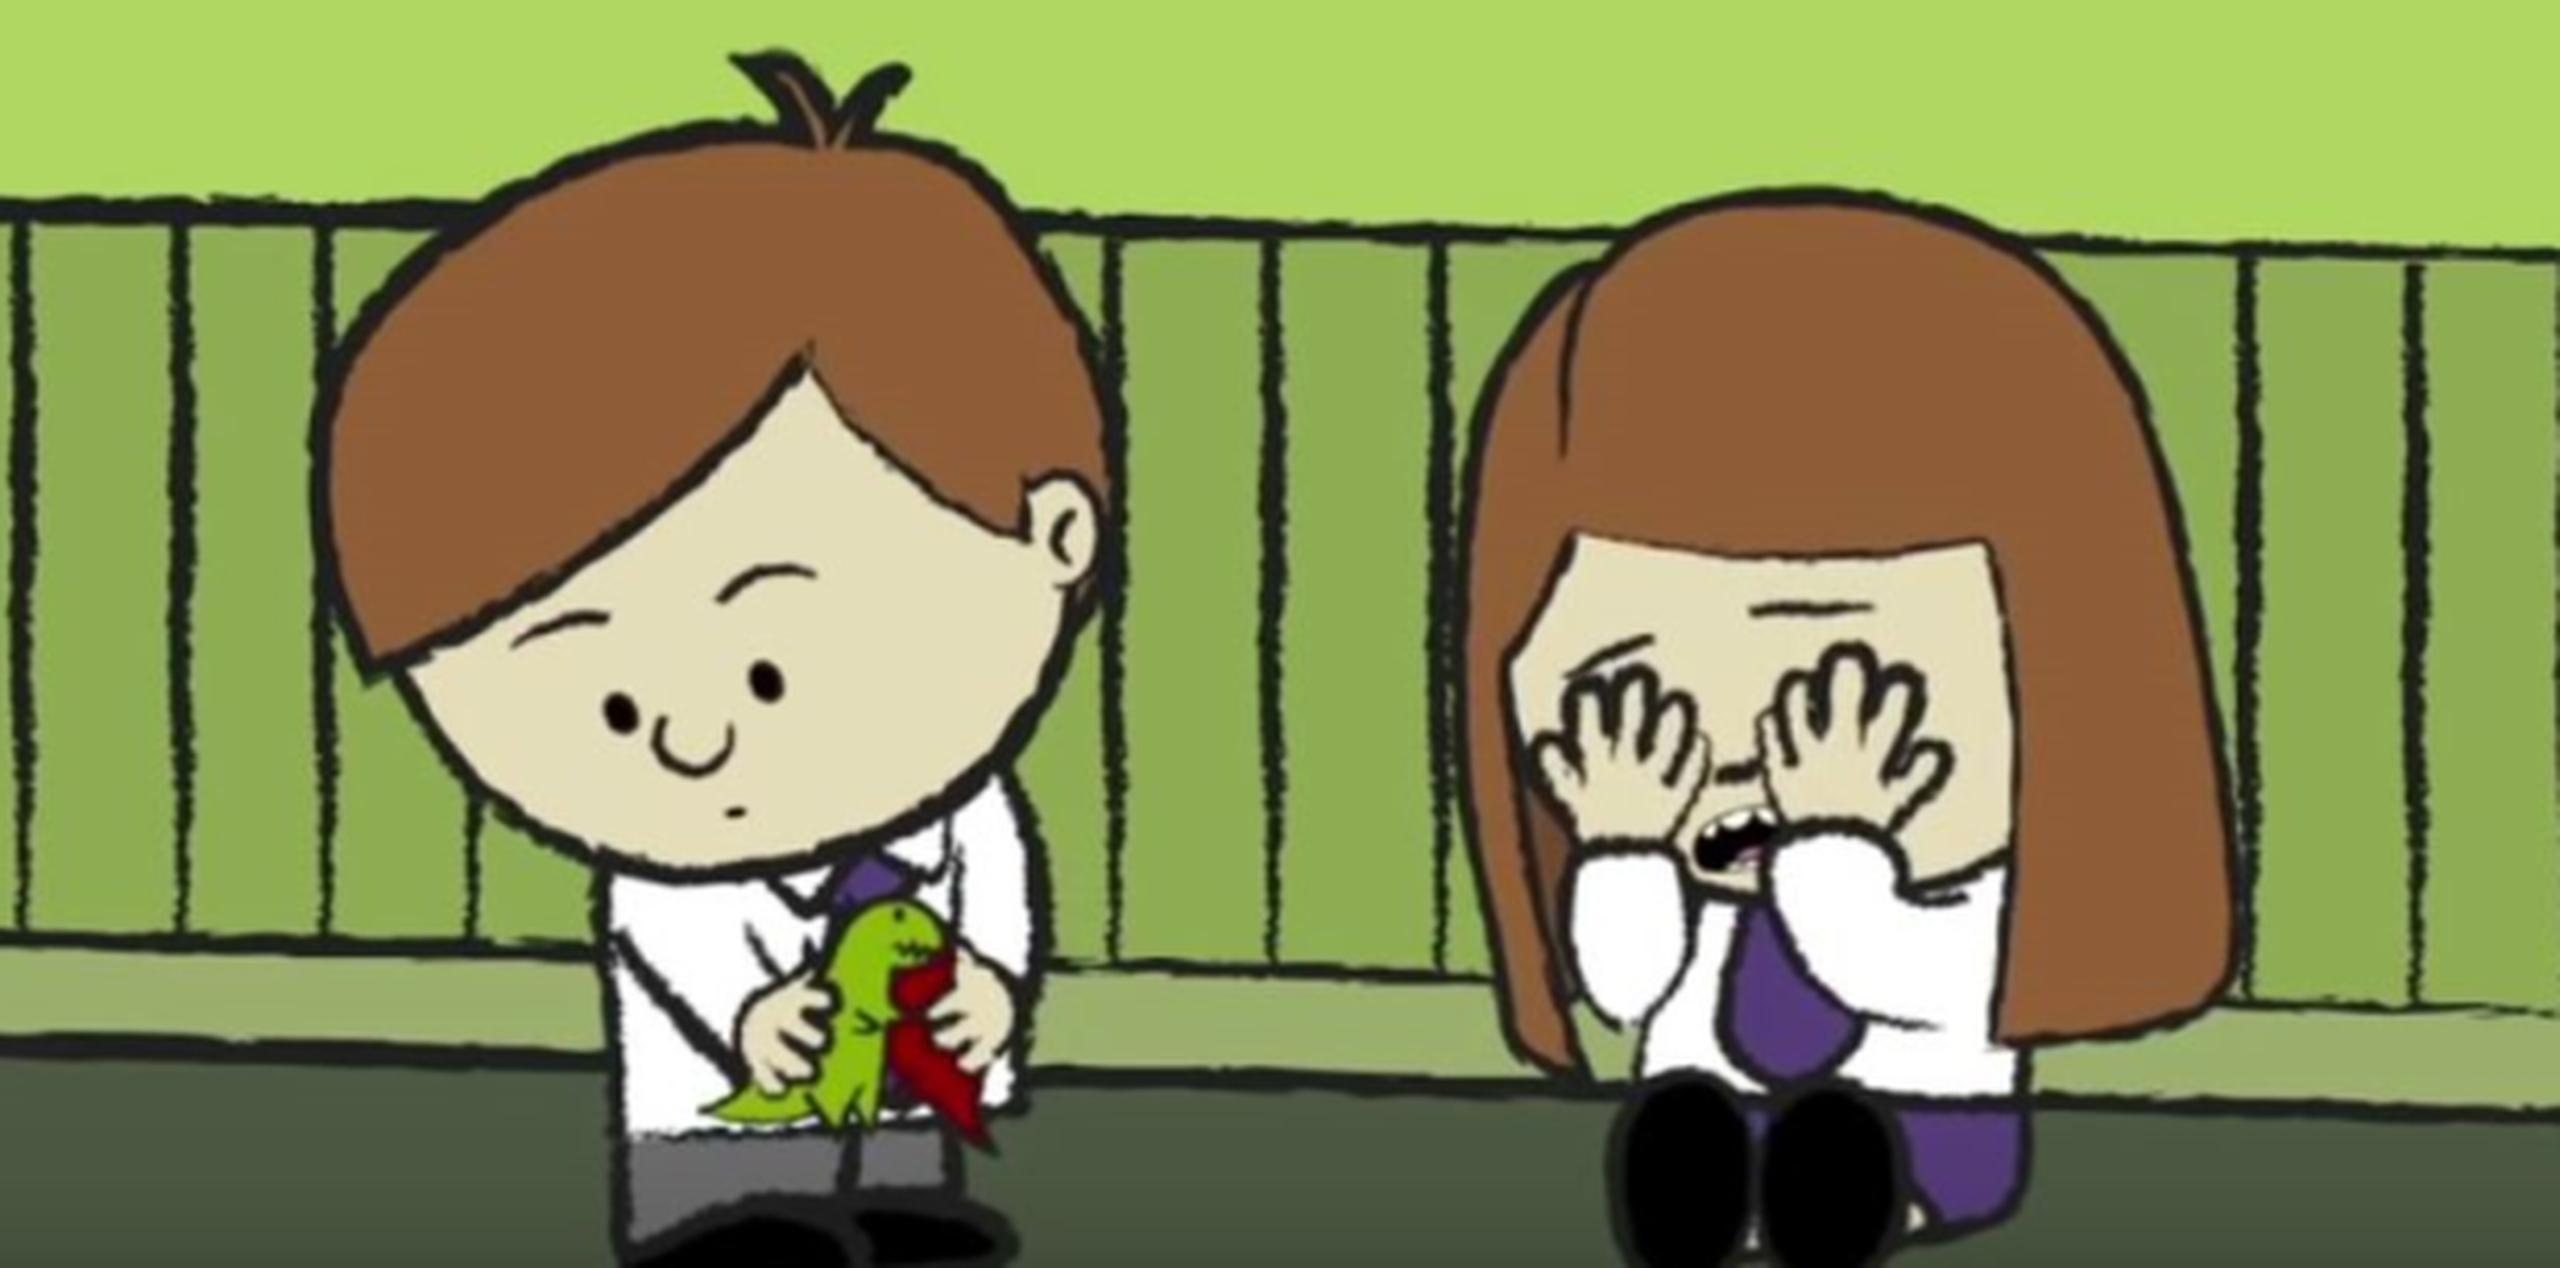 Este vídeo de dibujos animados cuyos personajes son niños publicado por “SOMArmonía Musicoterapia” tiene el propósito de ilustrar de una manera sencilla y entretenida algunas de las características de las personas con Síndrome de Asperger. (Captura / YouTube)